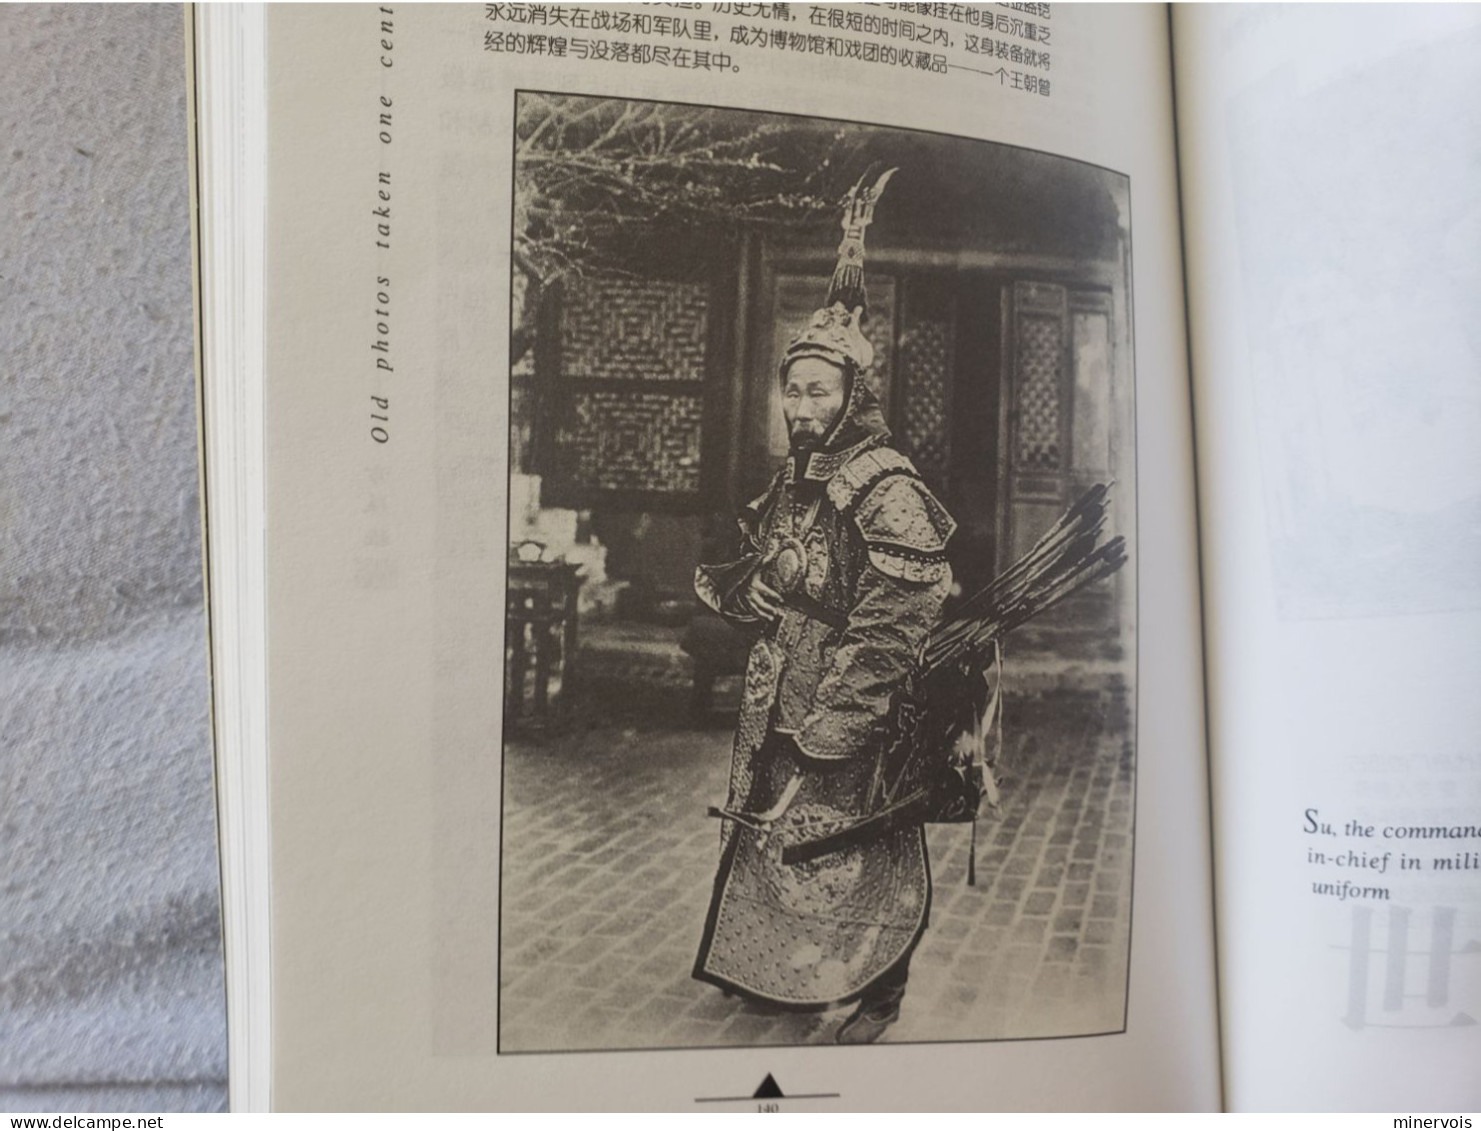 kunming late qing absolutely shine (1896-1904) - chinese edition - livre de ben she yi ming (broché) cflacpc 01/01/2000